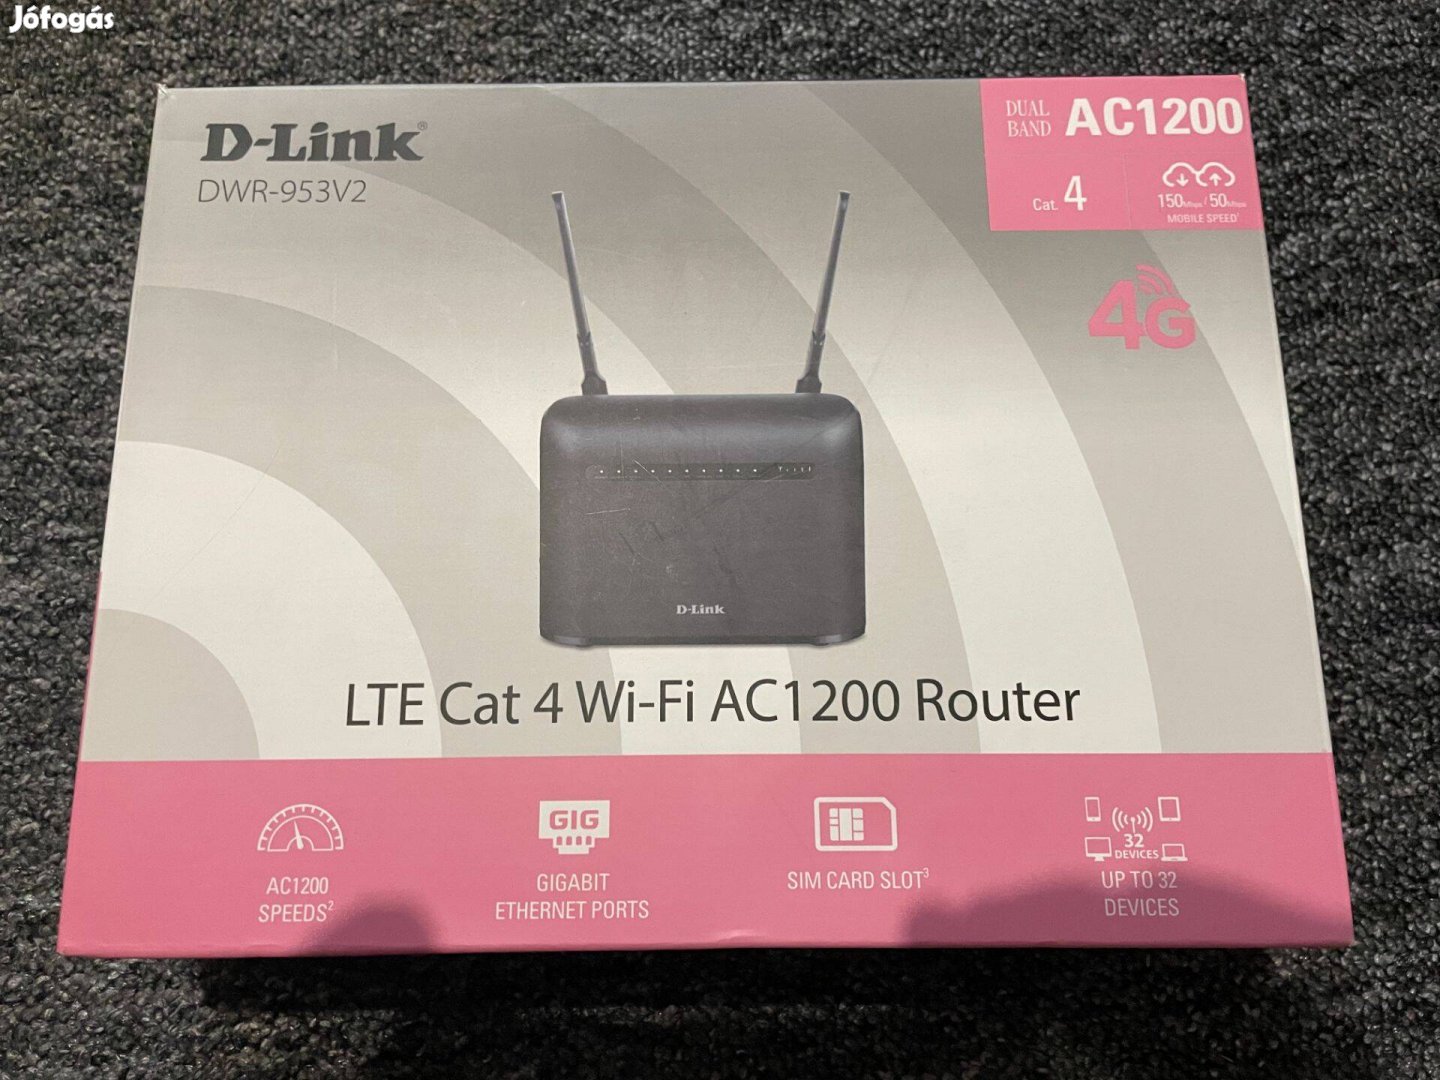 Eladó alig használt garanciális D-Link DWR-953V2 sim kártyás router